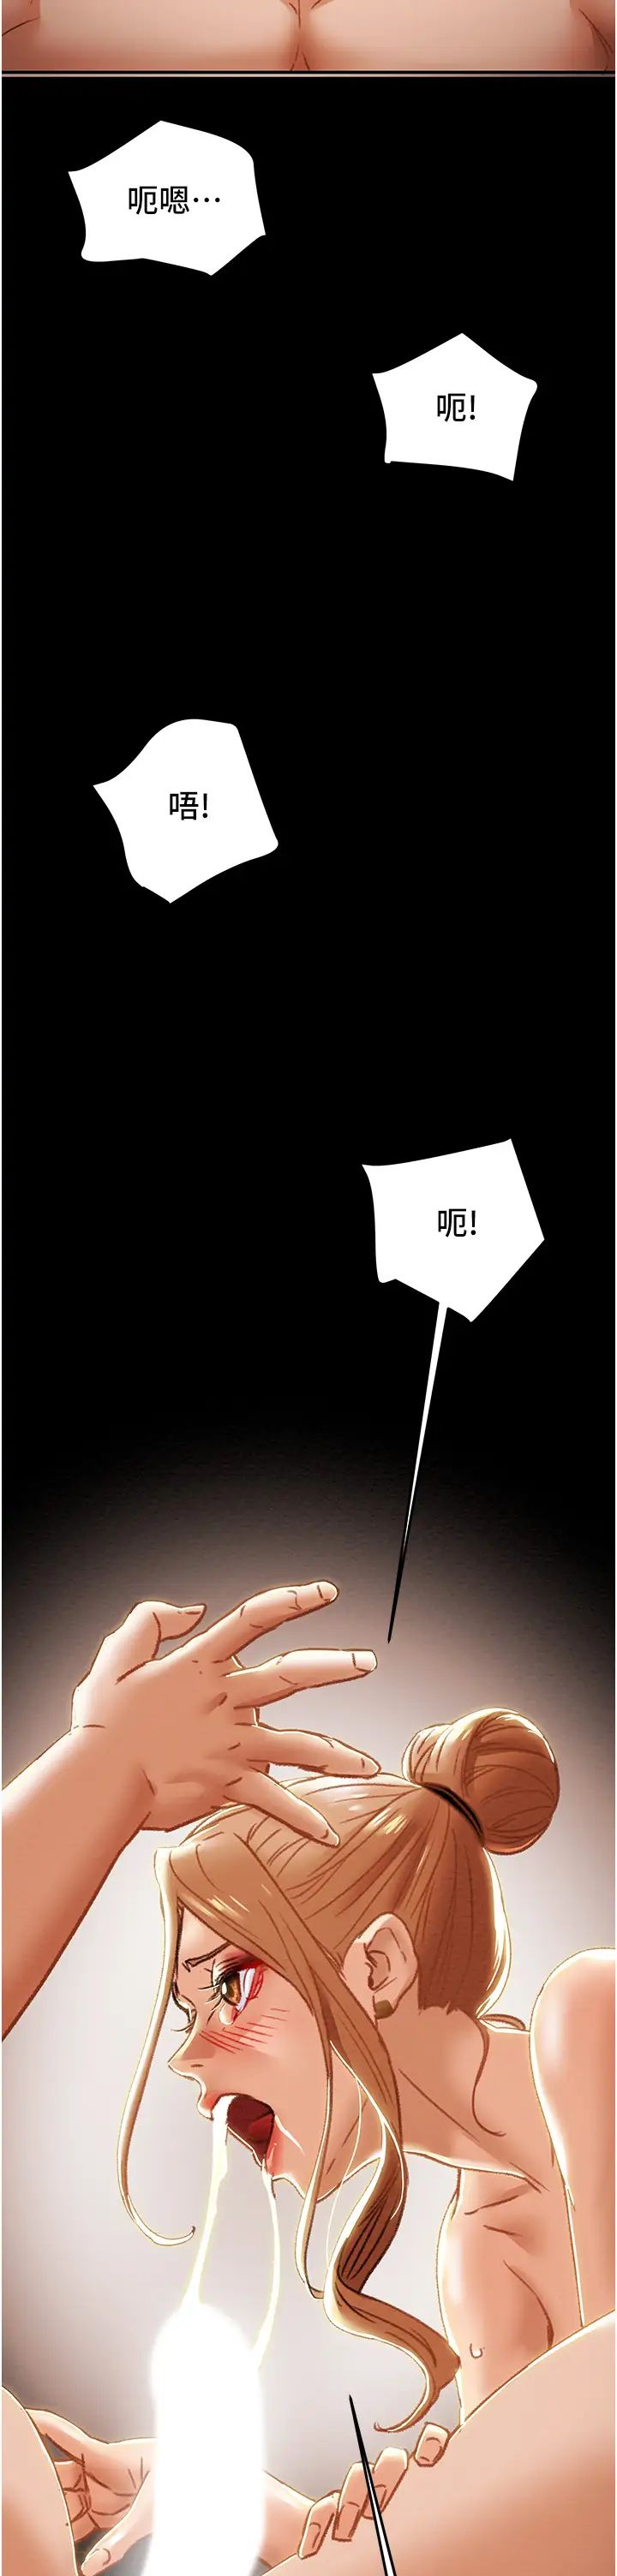 韩国污漫画 純情女攻略計劃 第53话释放在小穴内的快感 29